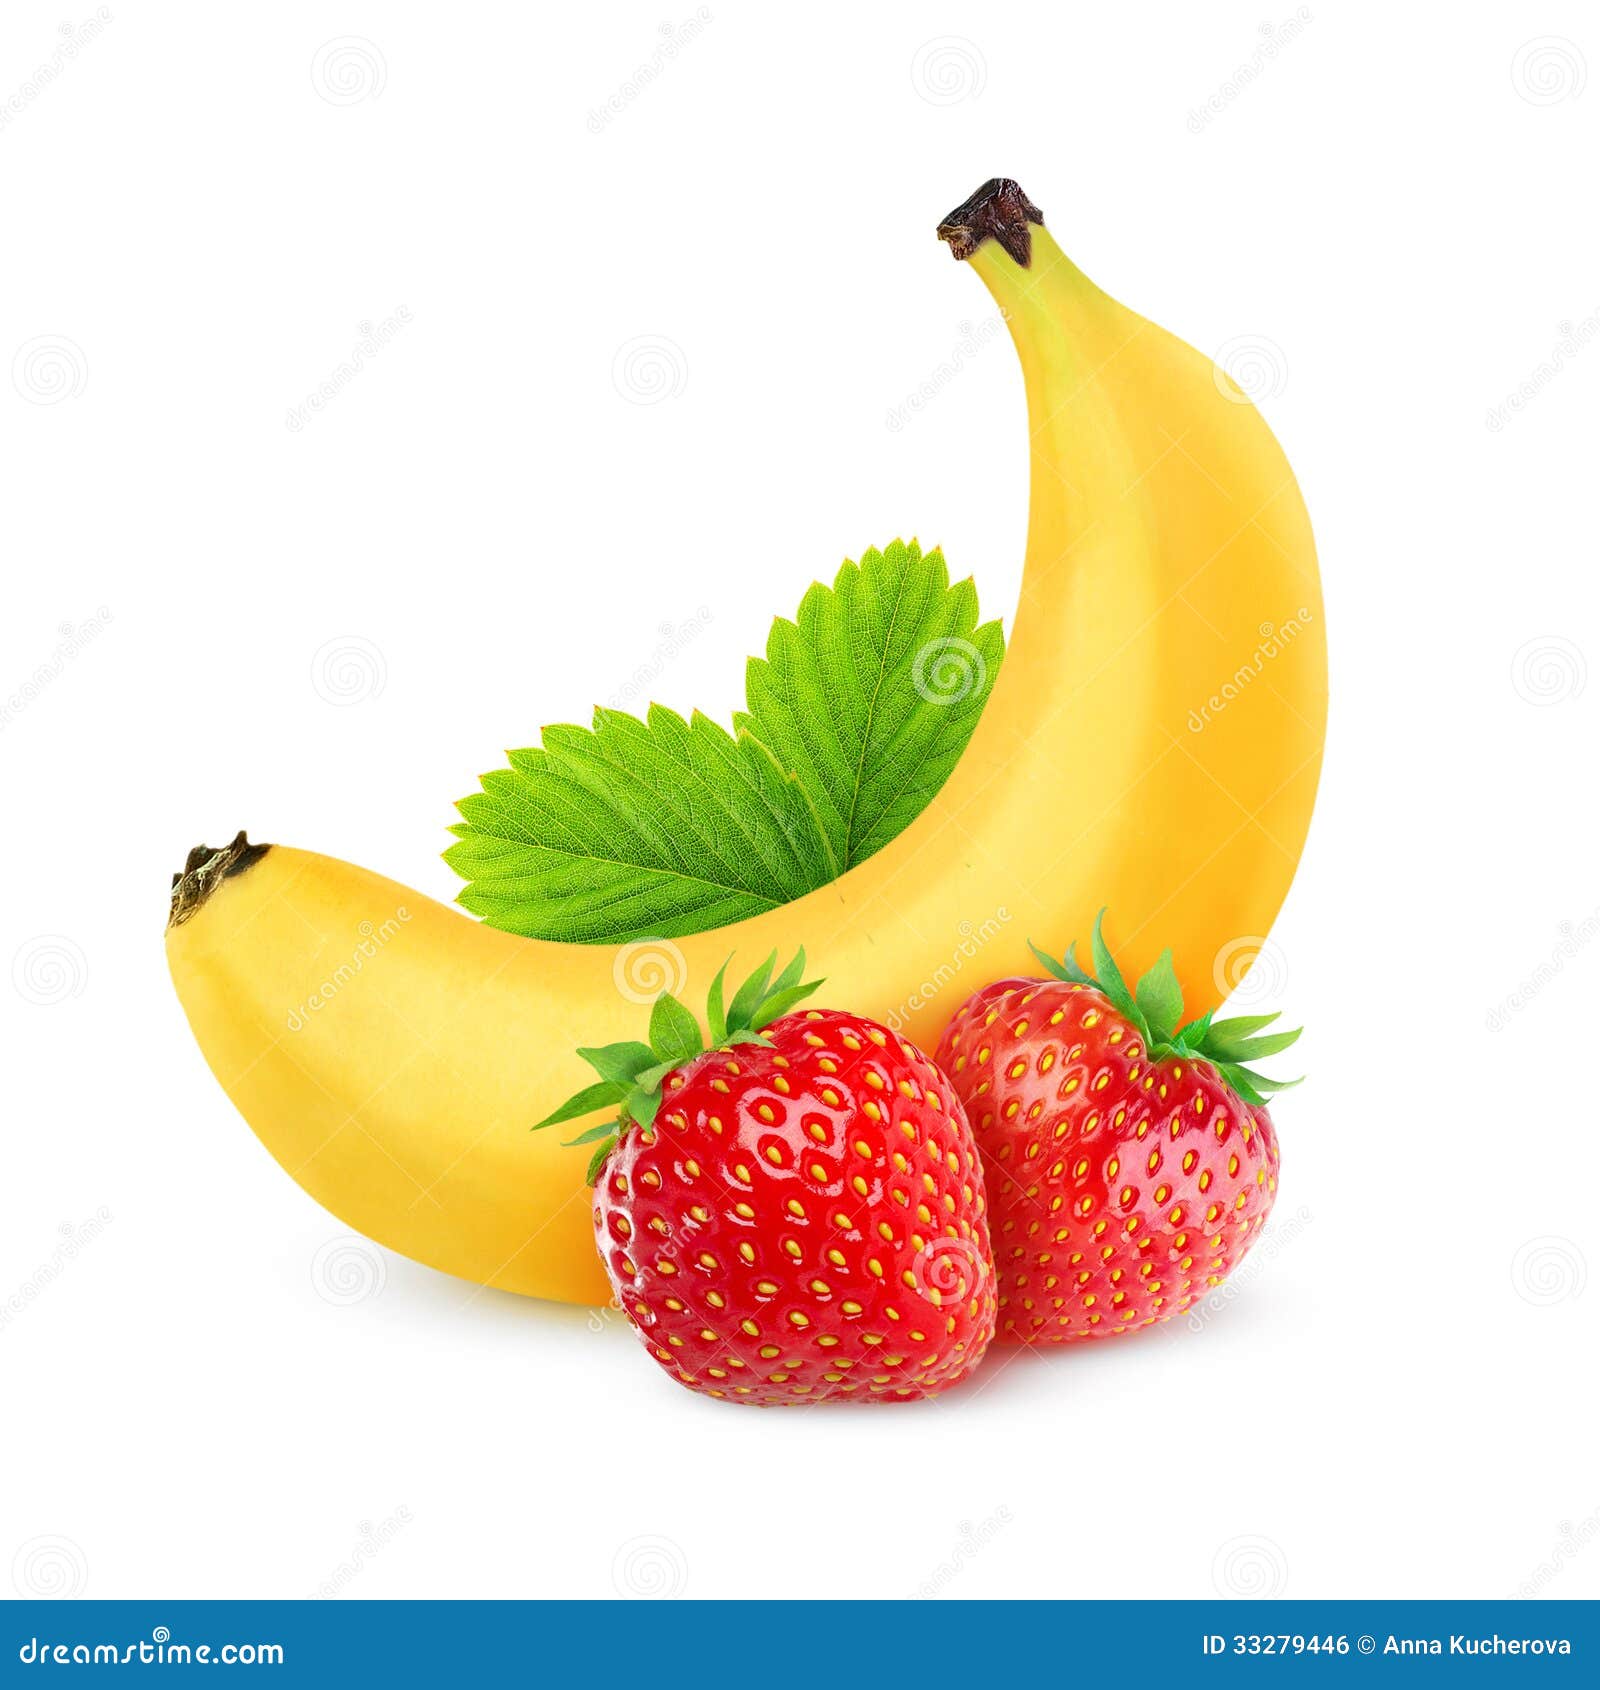 strawberry banana clipart - photo #2